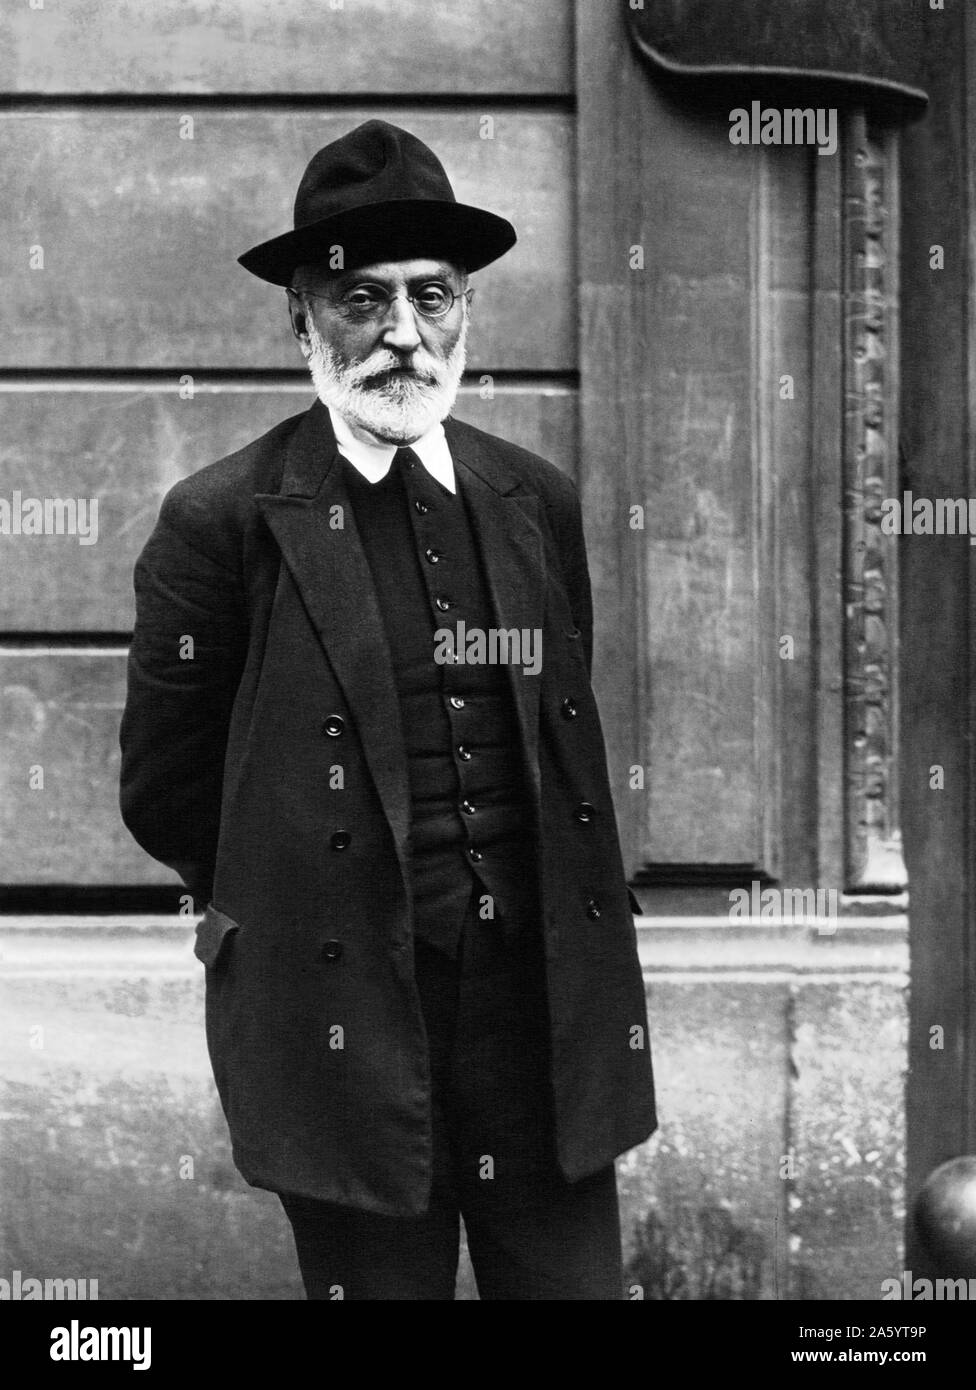 Miguel de Unamuno y Jugo (1864 - 31 décembre 1936) Espagnol essayiste, romancier, poète, dramaturge, philosophe, professeur et plus tard grec et recteur de l'Université de Salamanque Banque D'Images